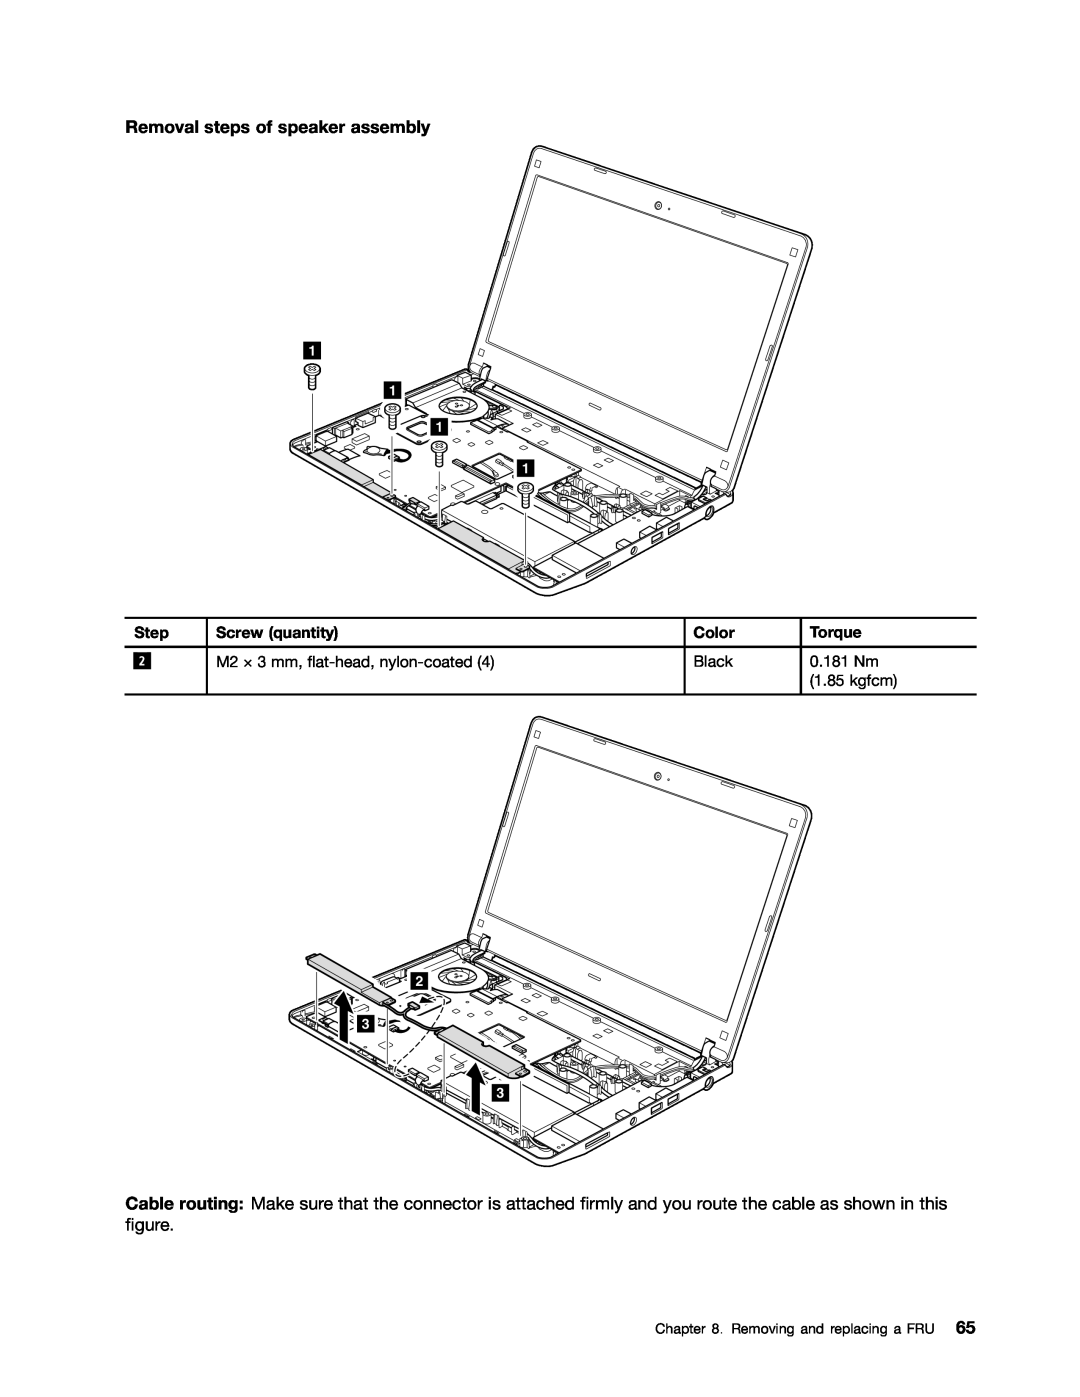 Lenovo EDGE 13, E31, E30 manual Removal steps of speaker assembly 